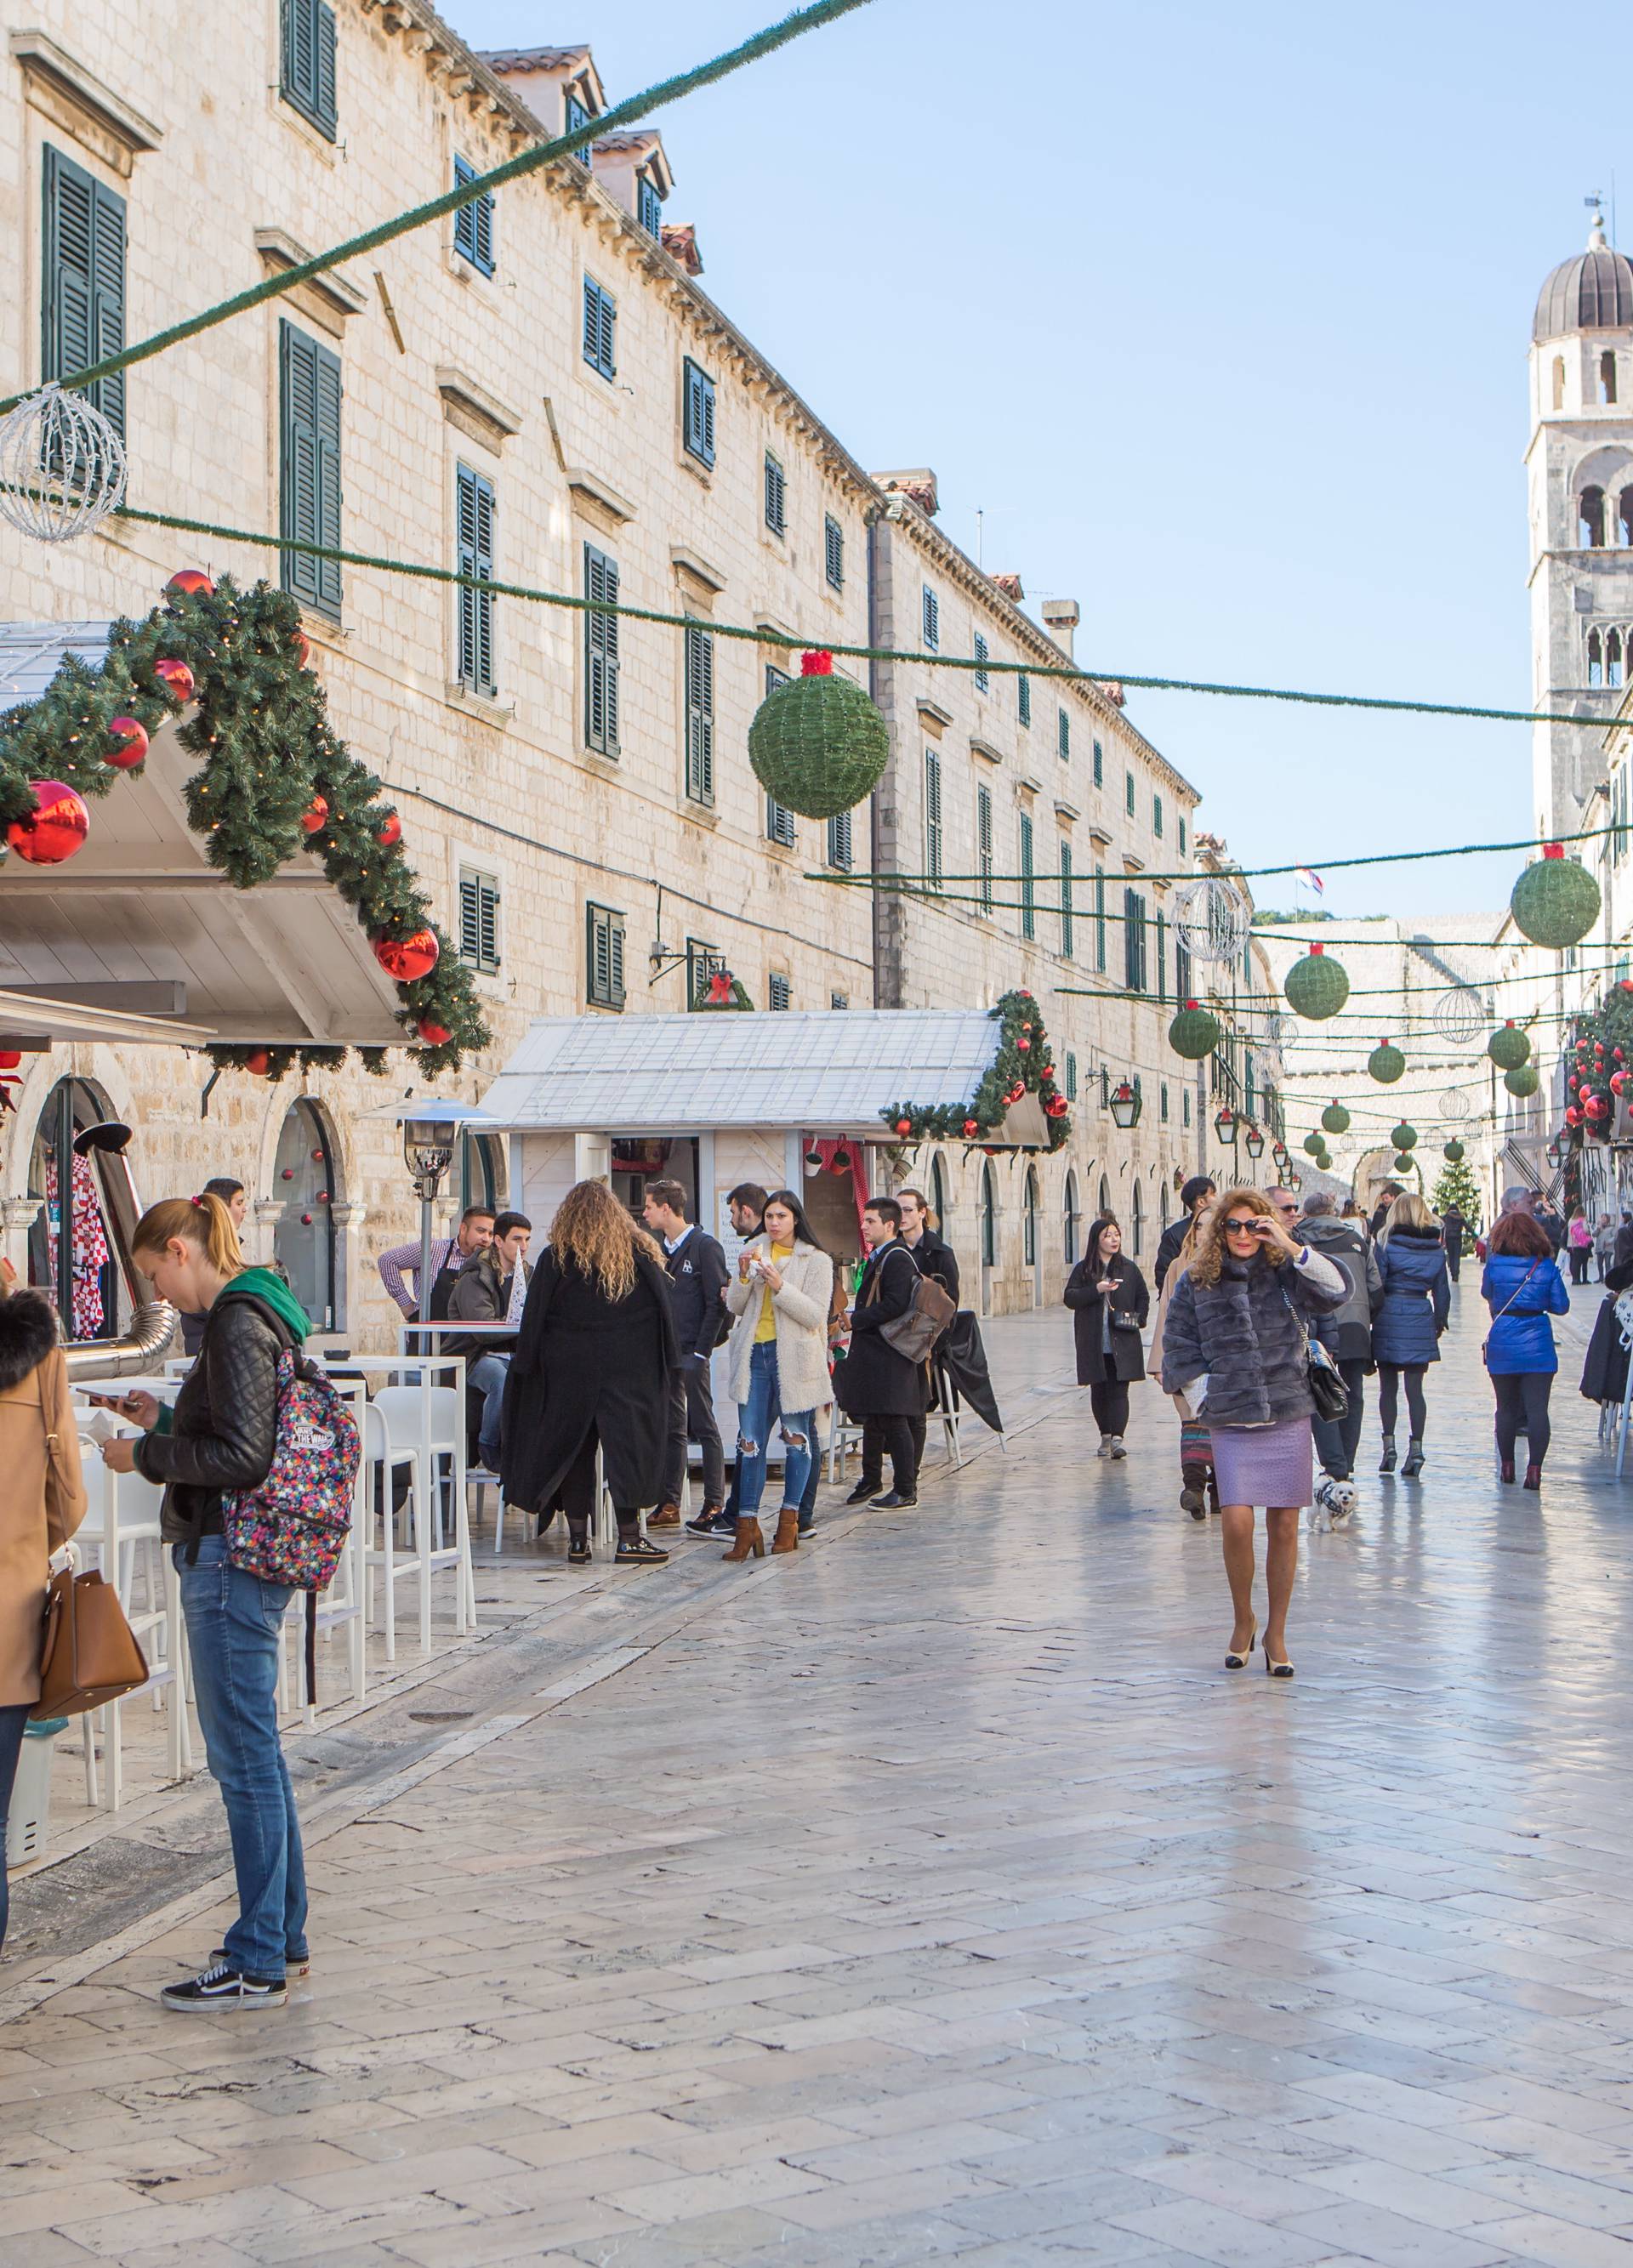 Bilo kuda, Advent svuda: Evo kako izgledaju hrvatski gradovi